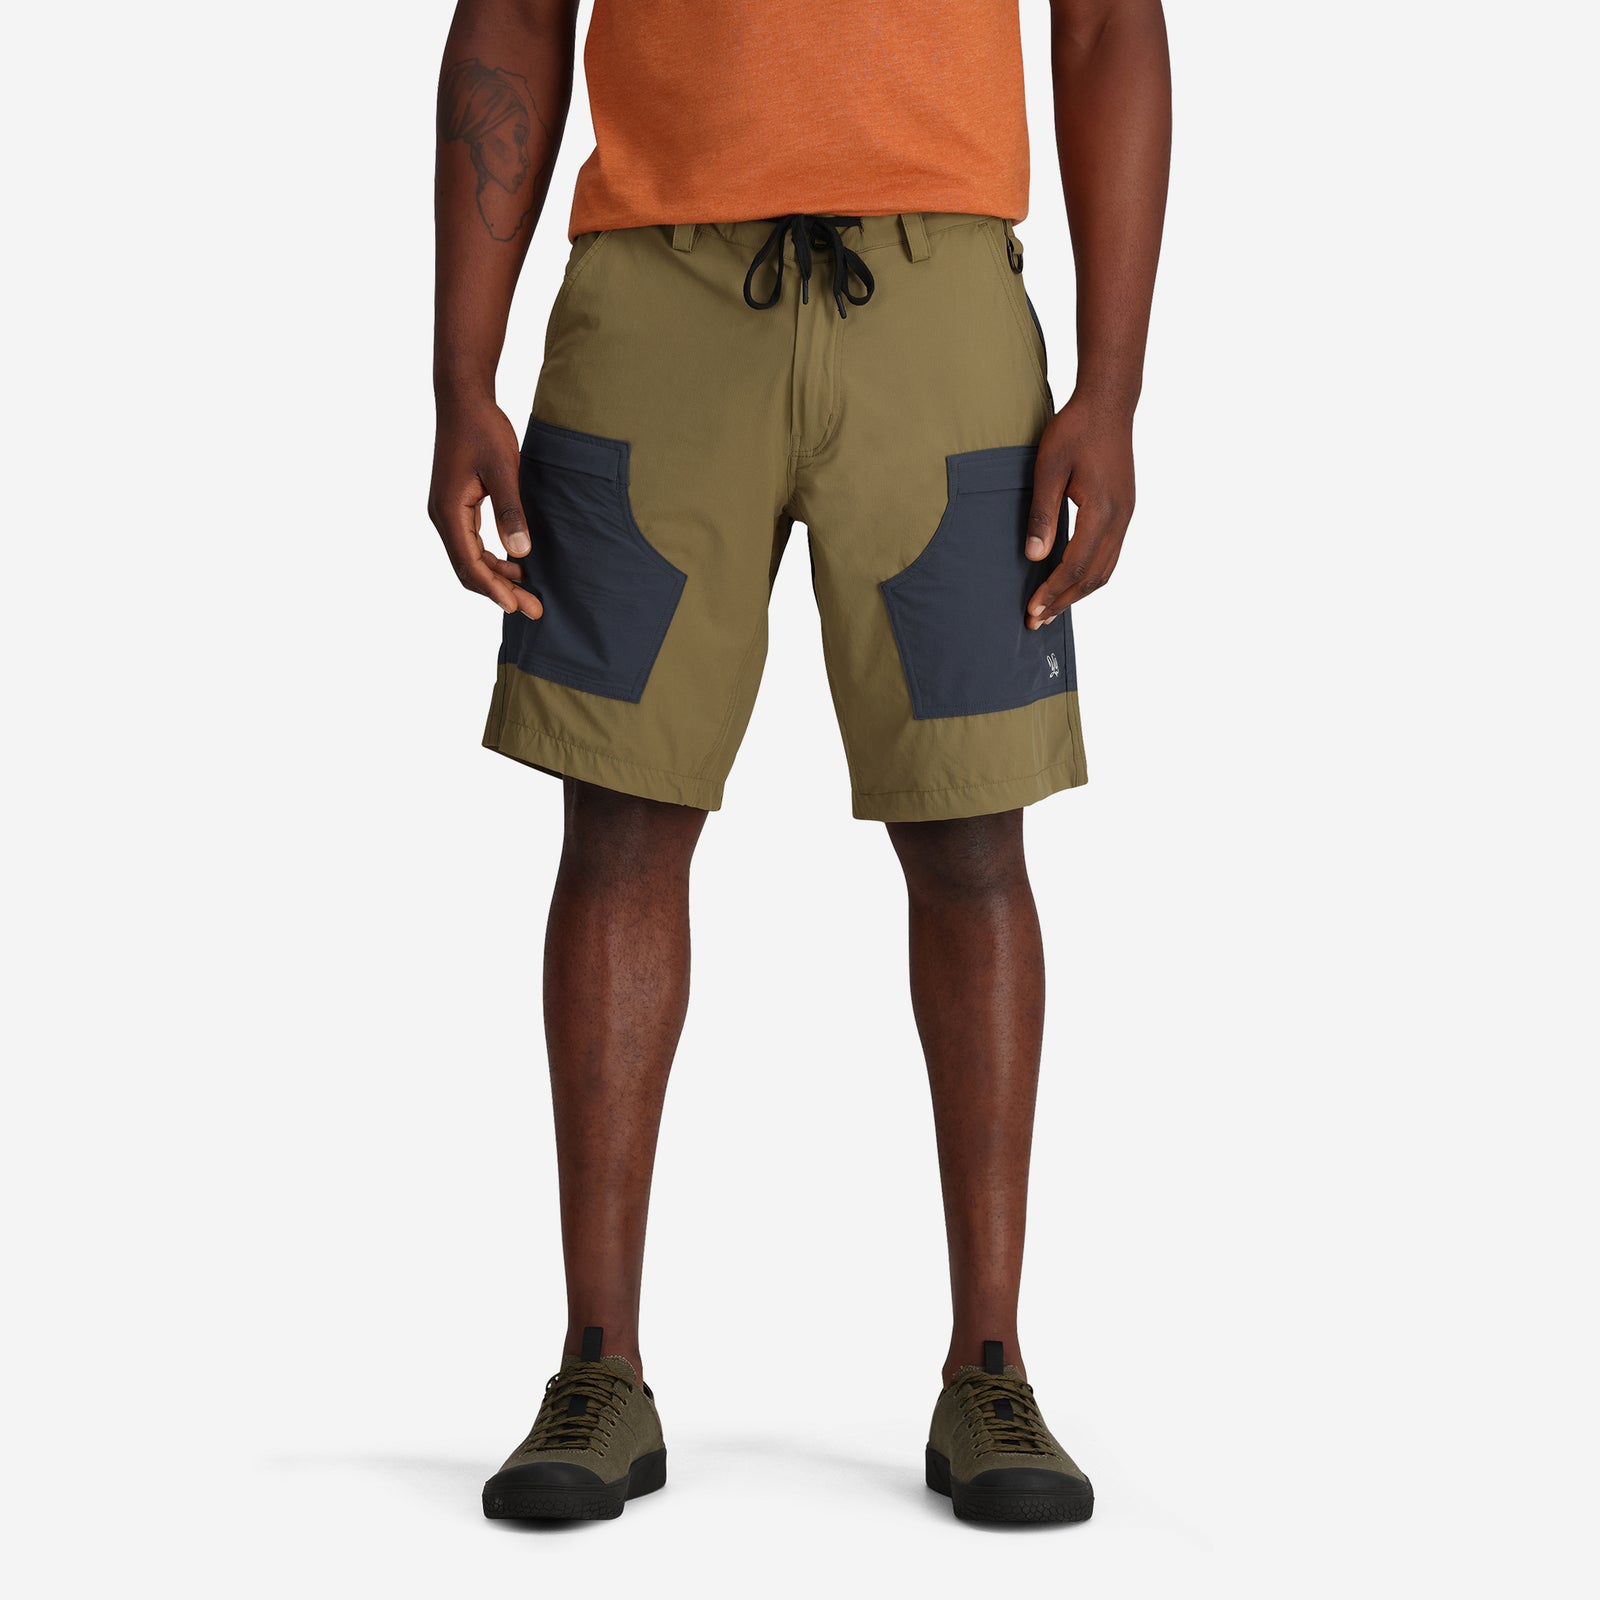 | Shorts Men\'s Outdoor Hybrid YoColorado Shorts |